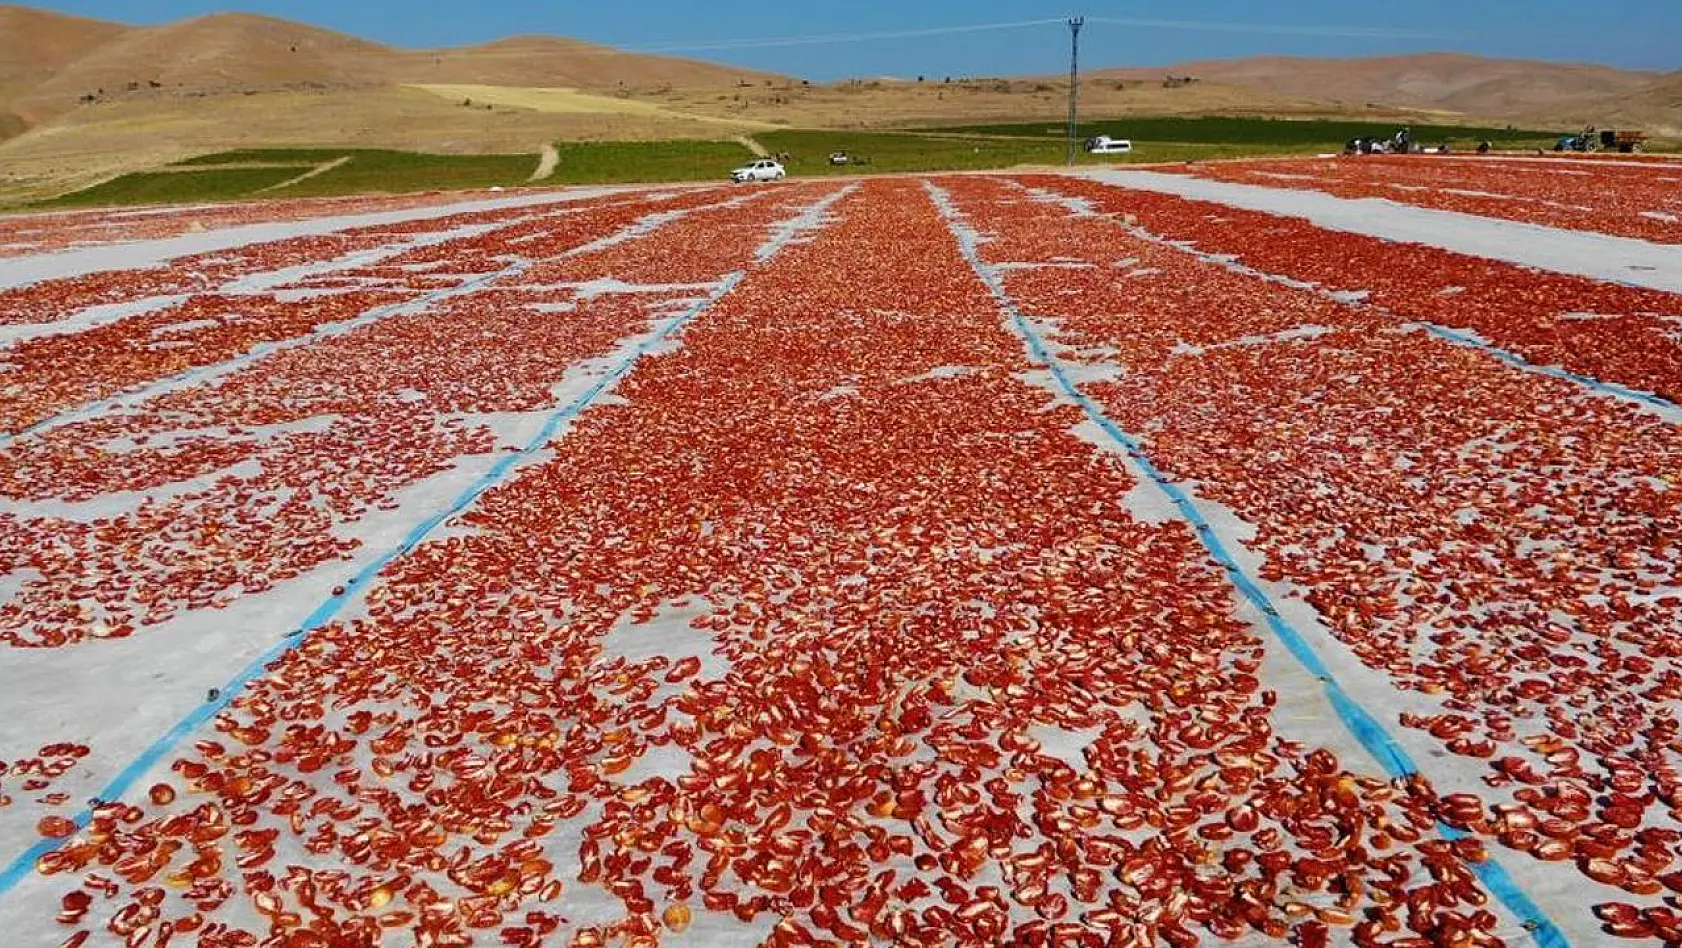 Elazığ'da üretilip kurutulan domatesler, dünya sofralarını süslüyor